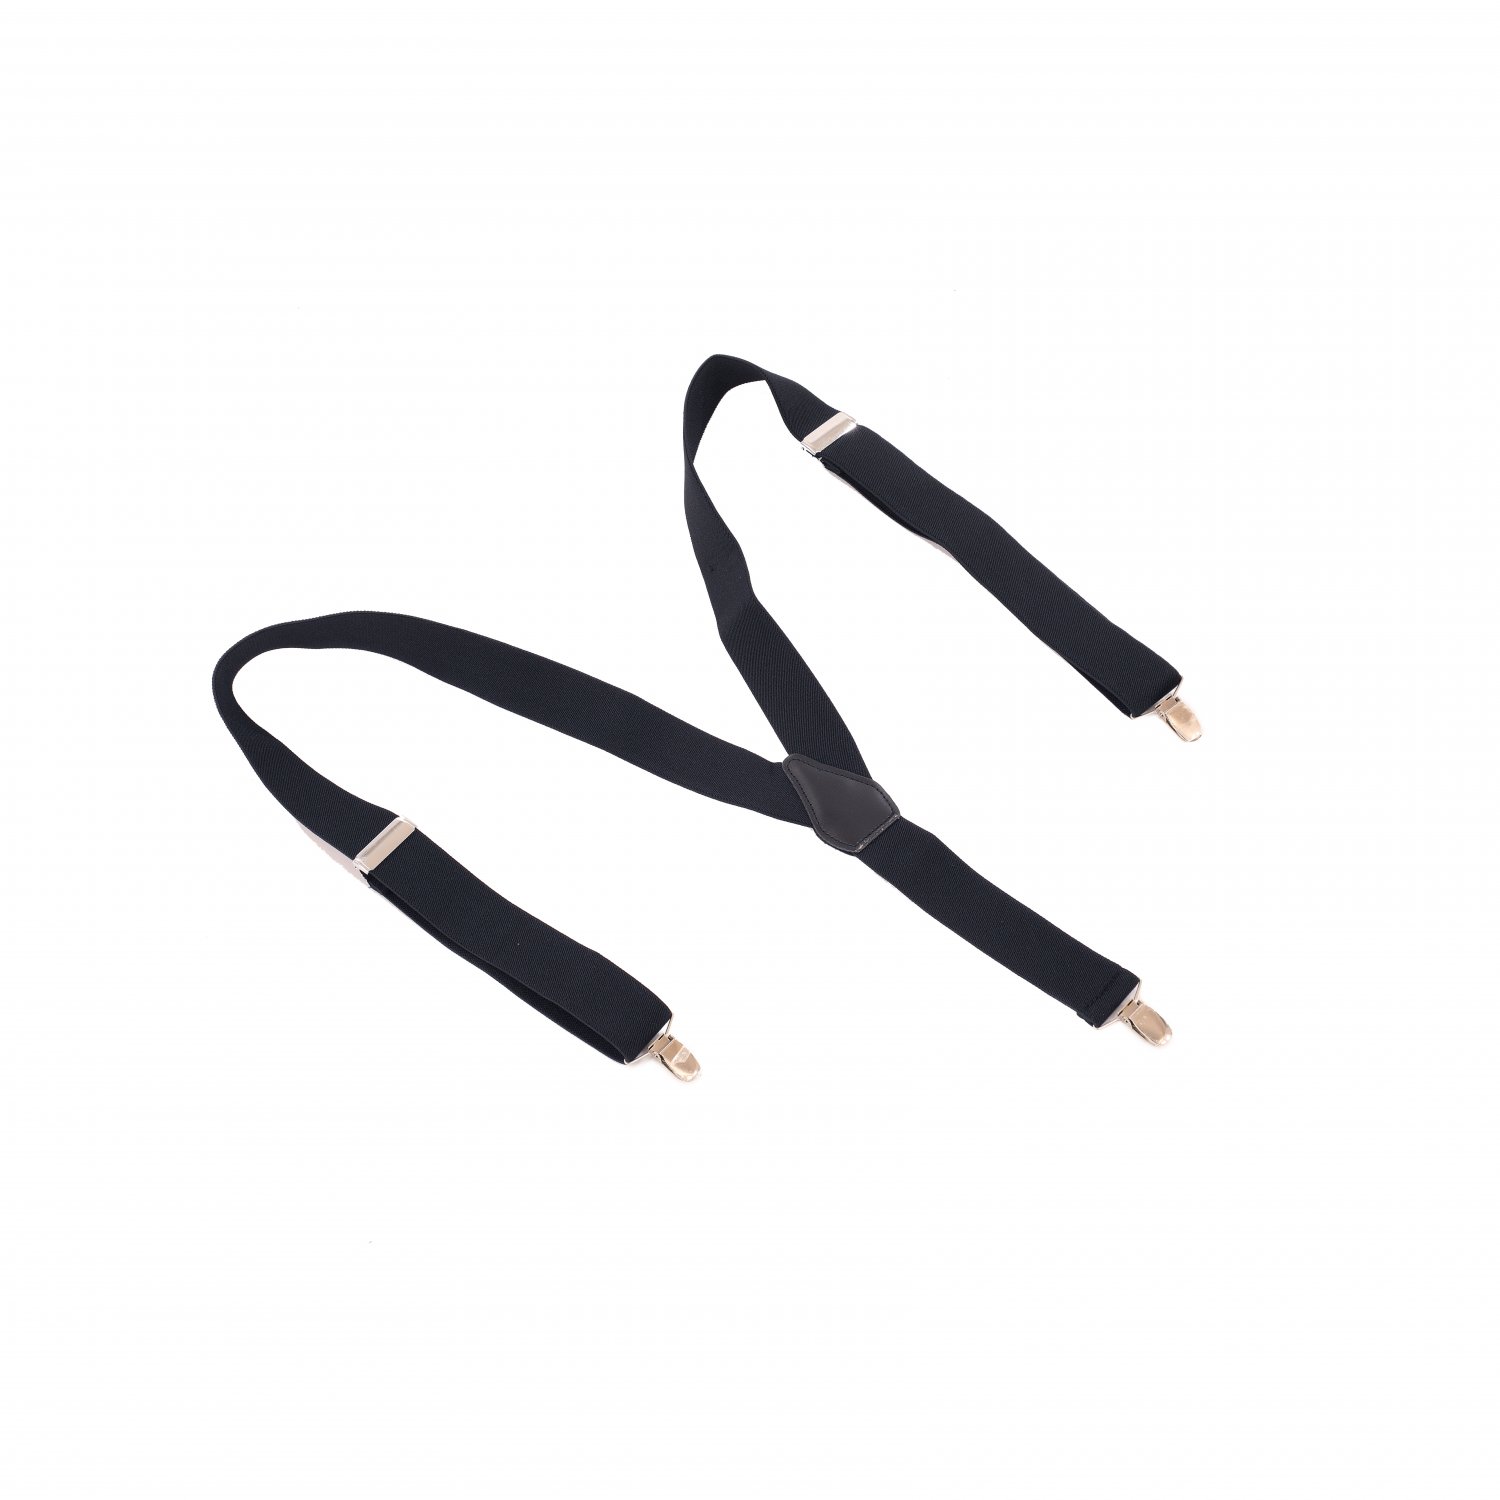 Unisex Black Elastic Adjustable Brace Outfit Suspenders with Met